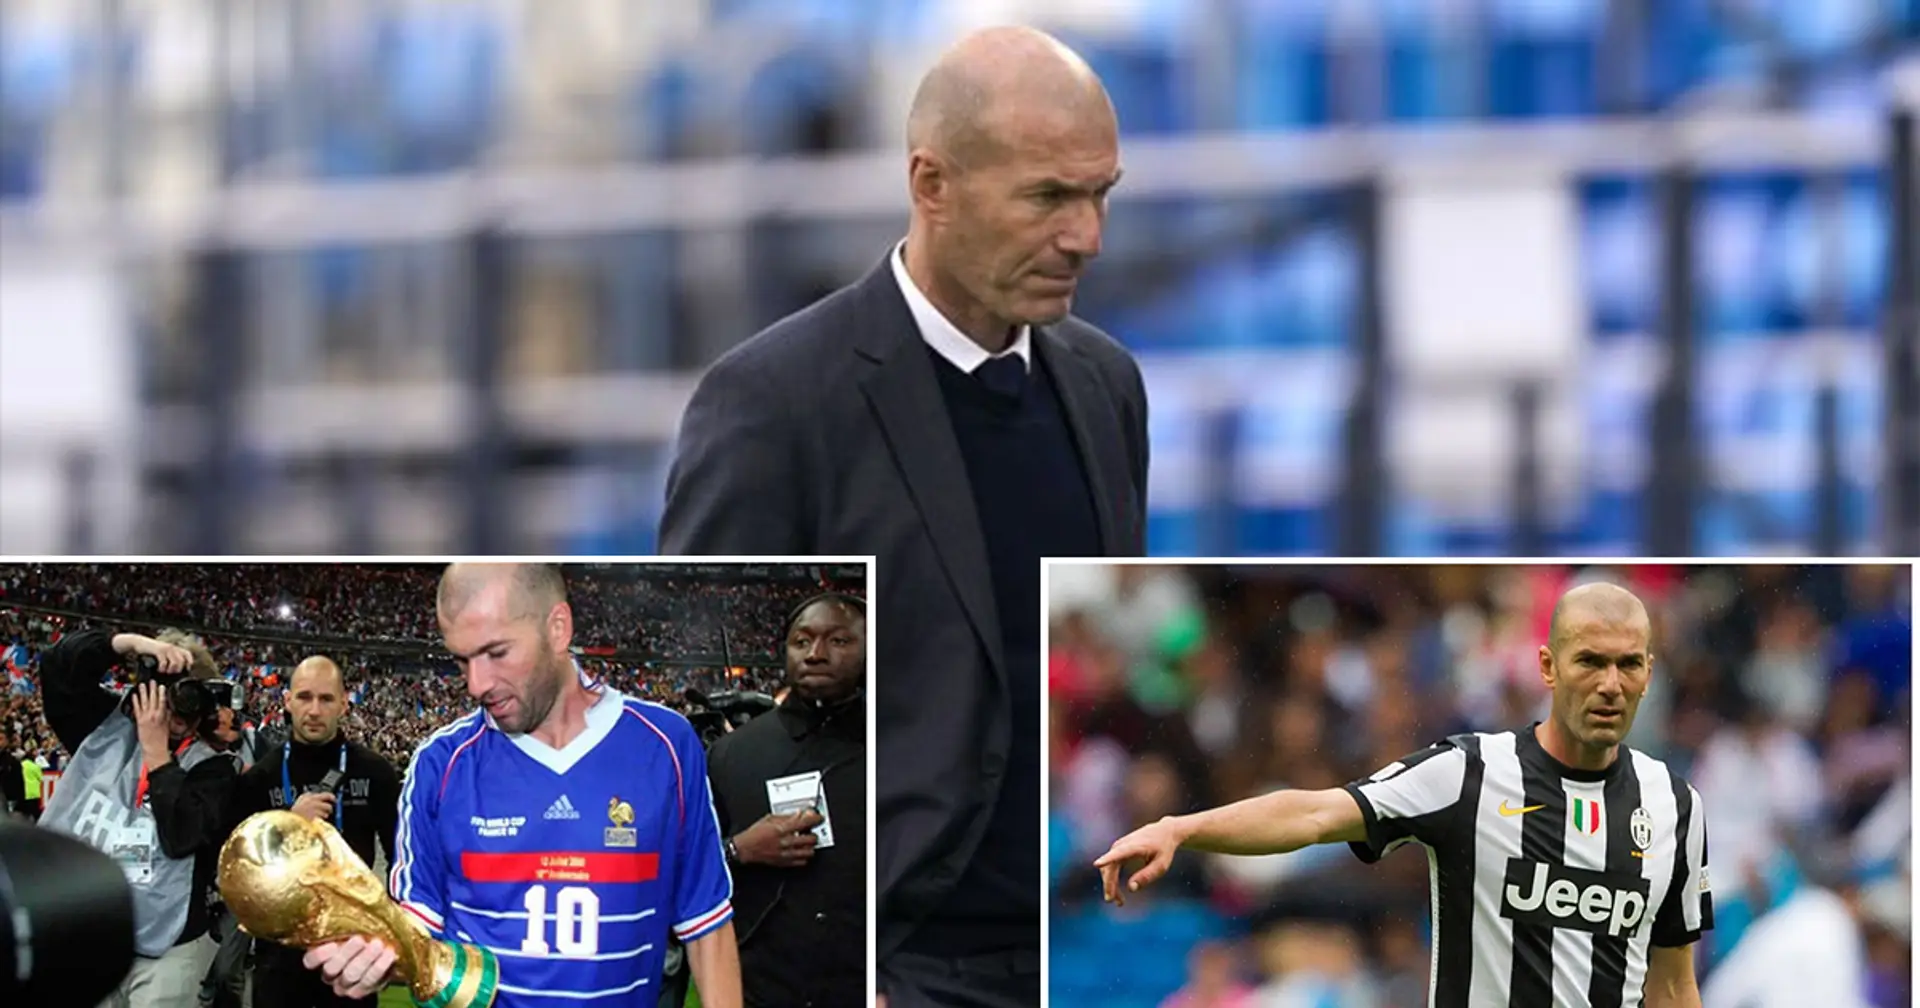 ¿Qué opciones tiene Zidane para entrenar la próxima temporada? Francia, Juve y 2 más